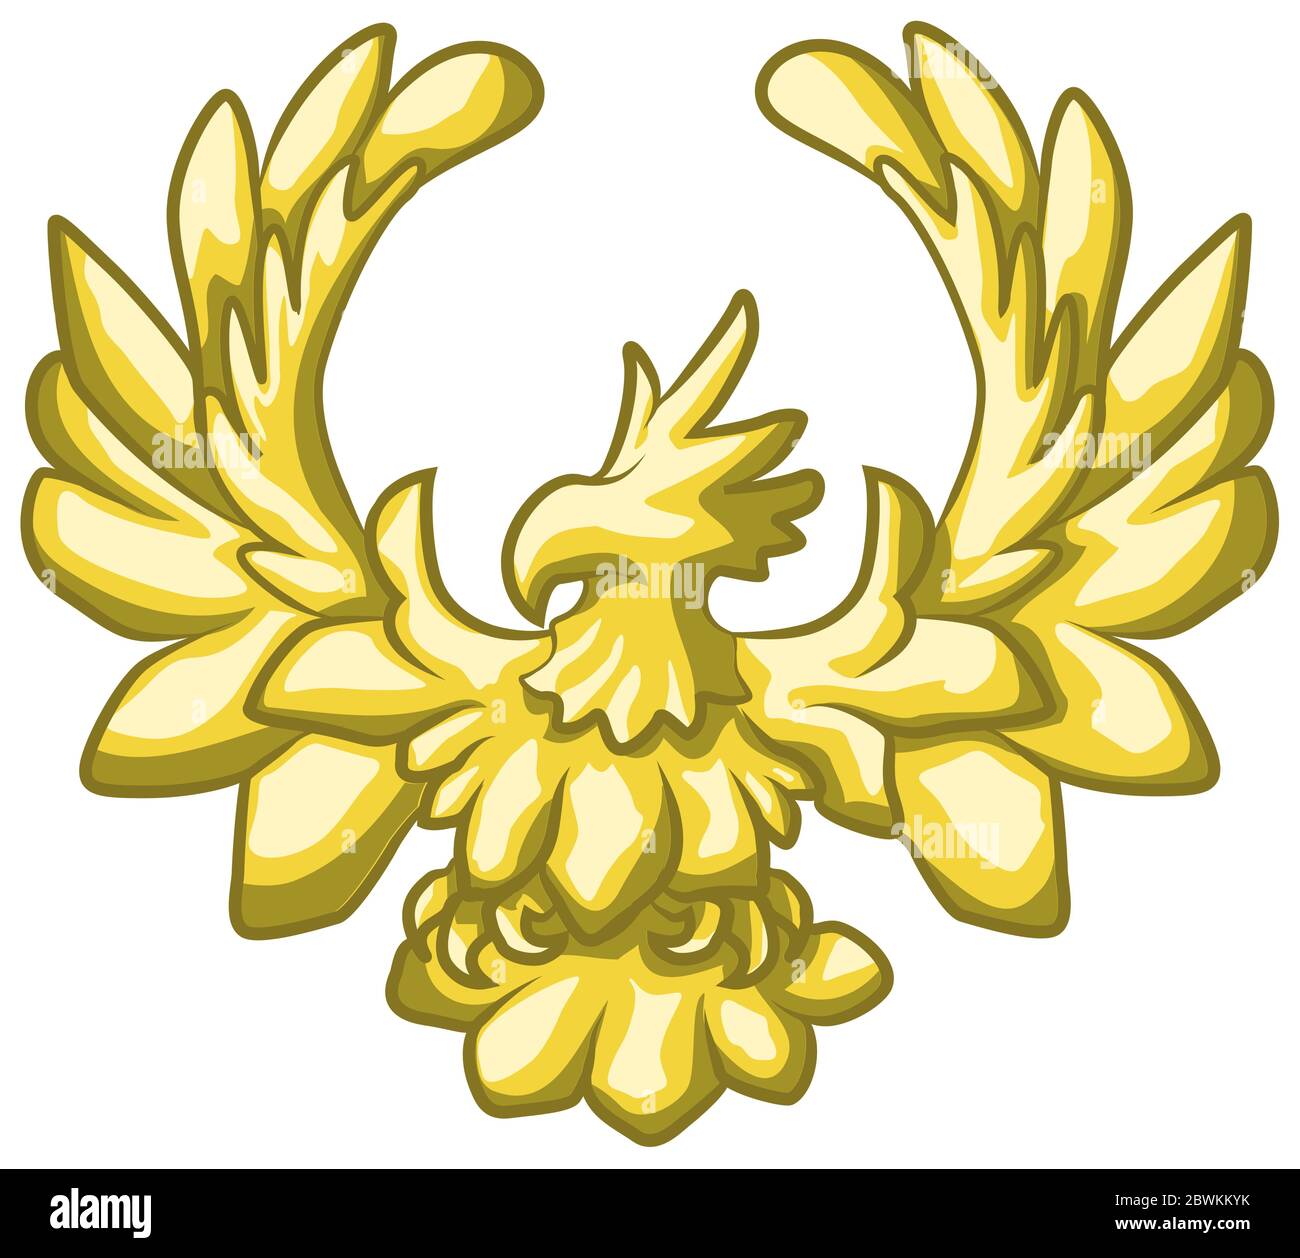 Elemento decorativo dell'aquila dorata del cartoon, illustrazione vettoriale del colore, orizzontale, isolato Illustrazione Vettoriale